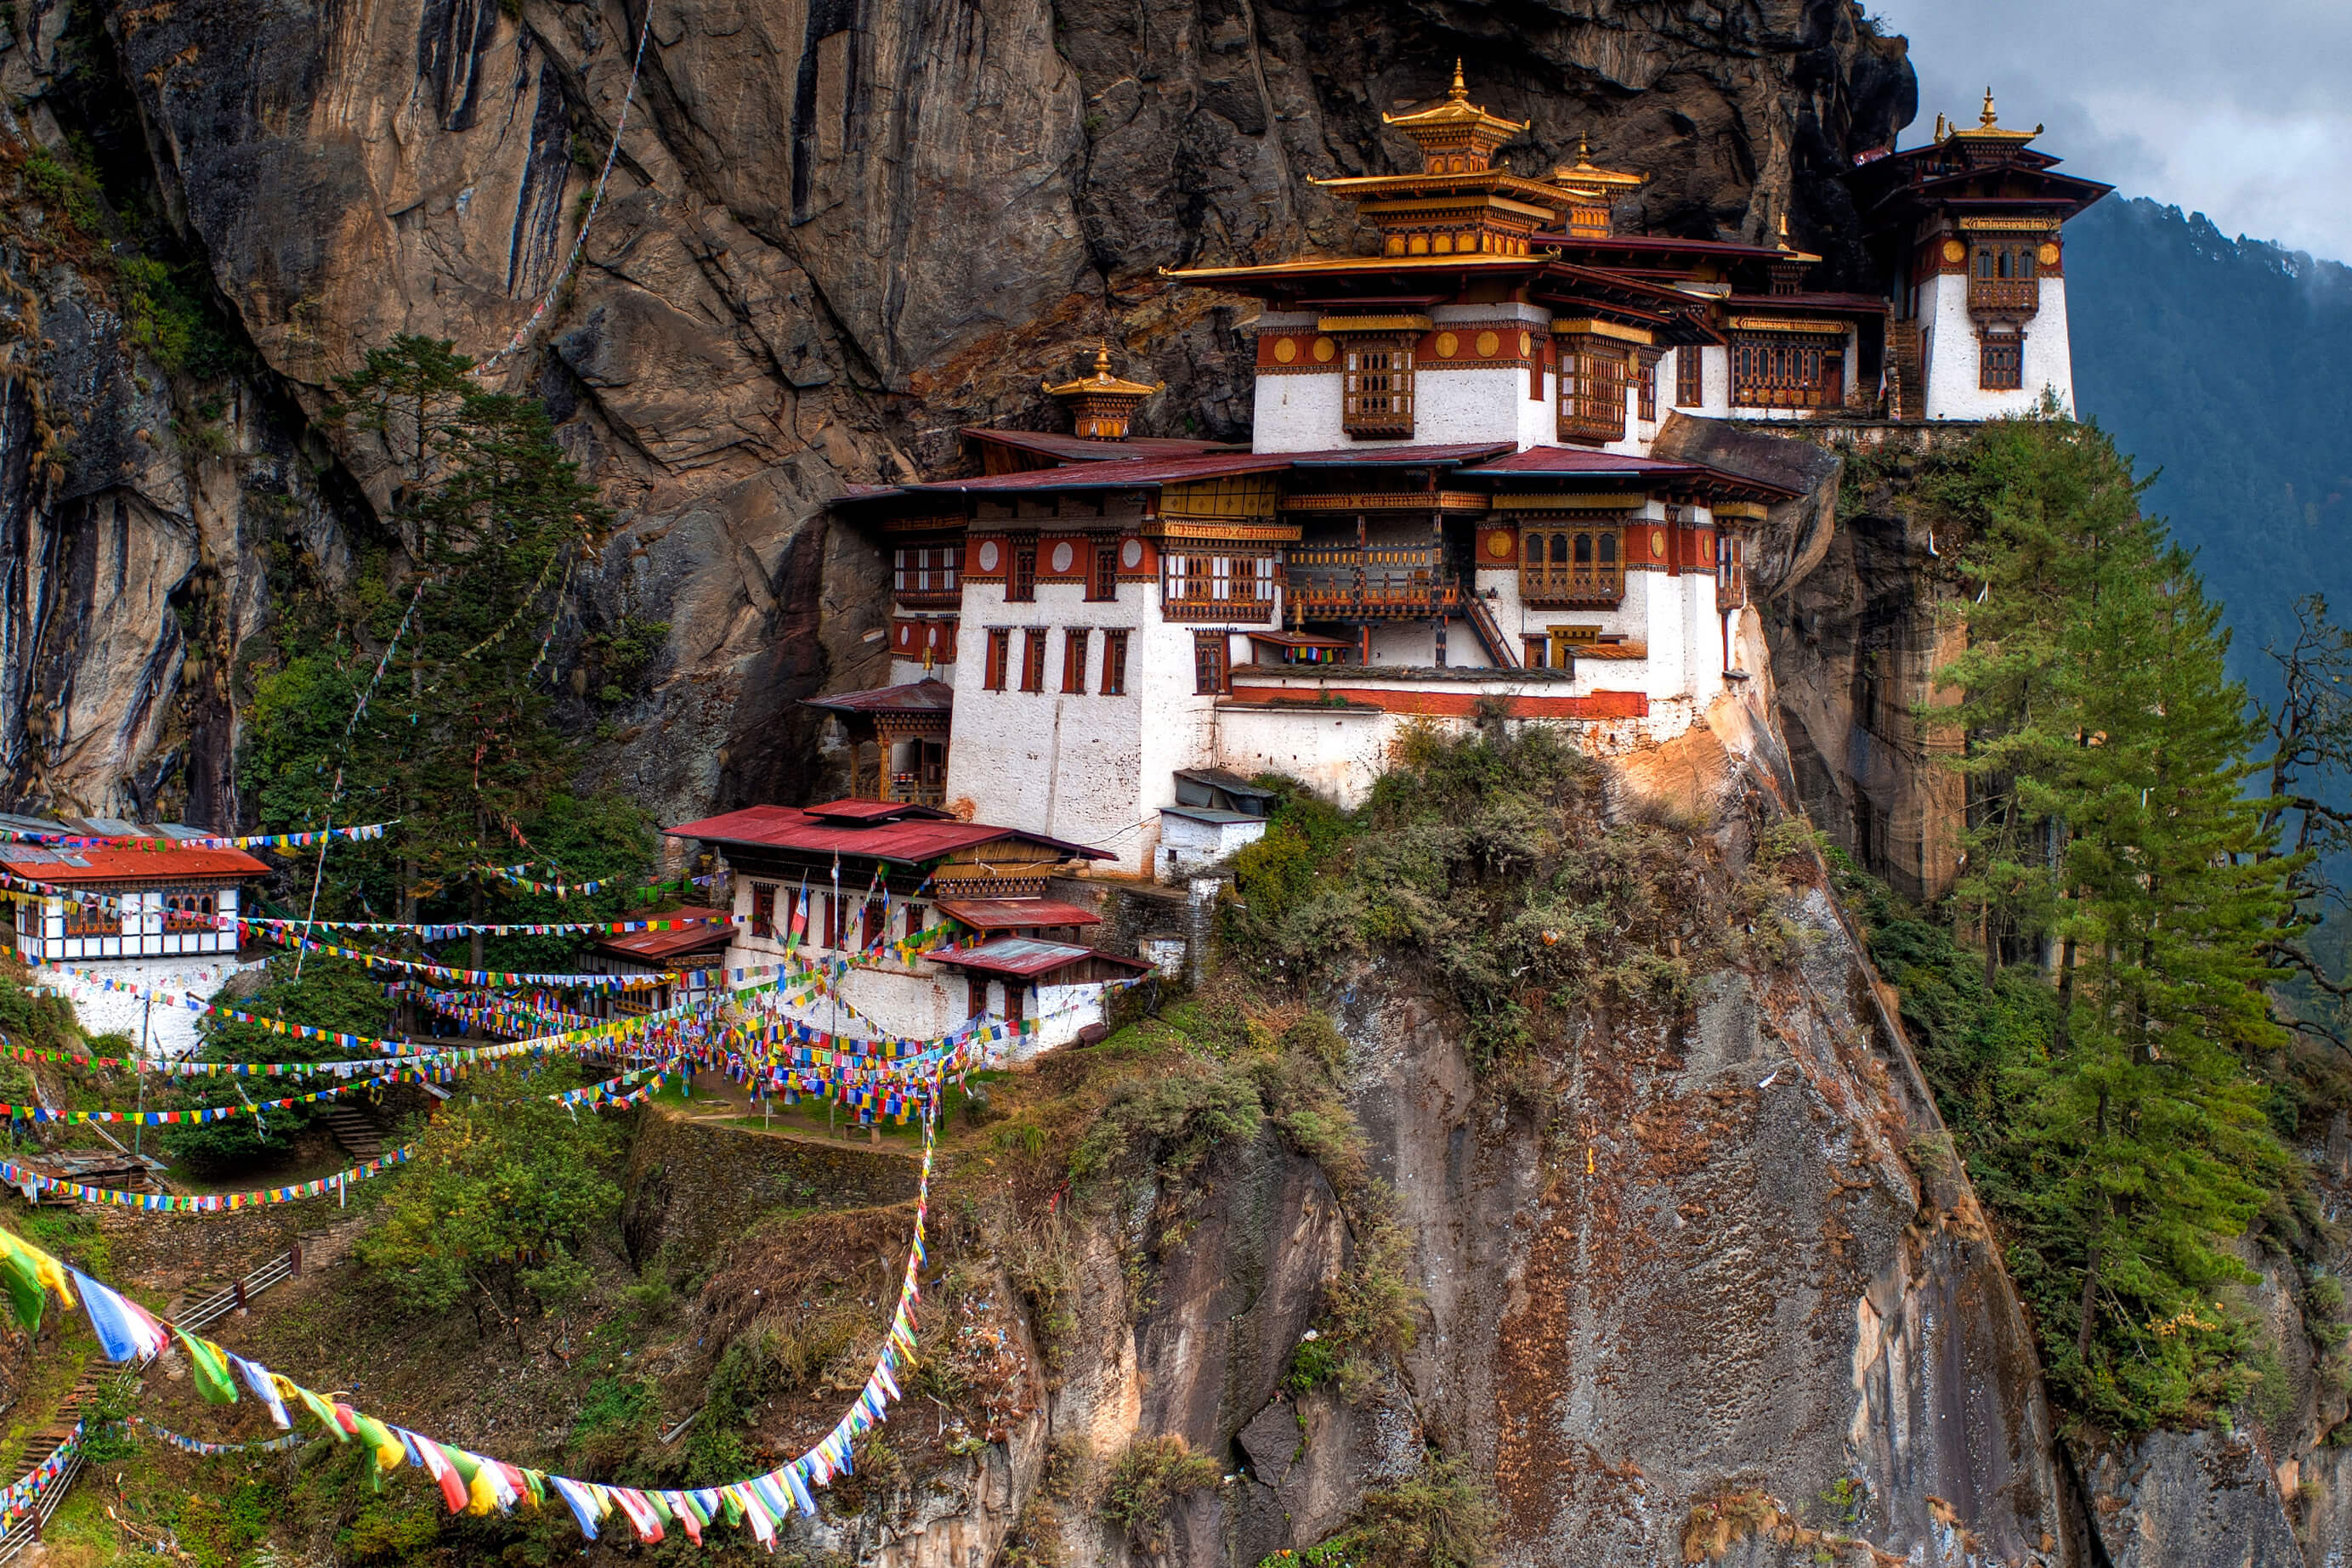 Káº¿t quáº£ hÃ¬nh áº£nh cho Â KhÃ¡m phÃ¡Â ÄÃ¨o Dochula cao 3.050 m Bhutan